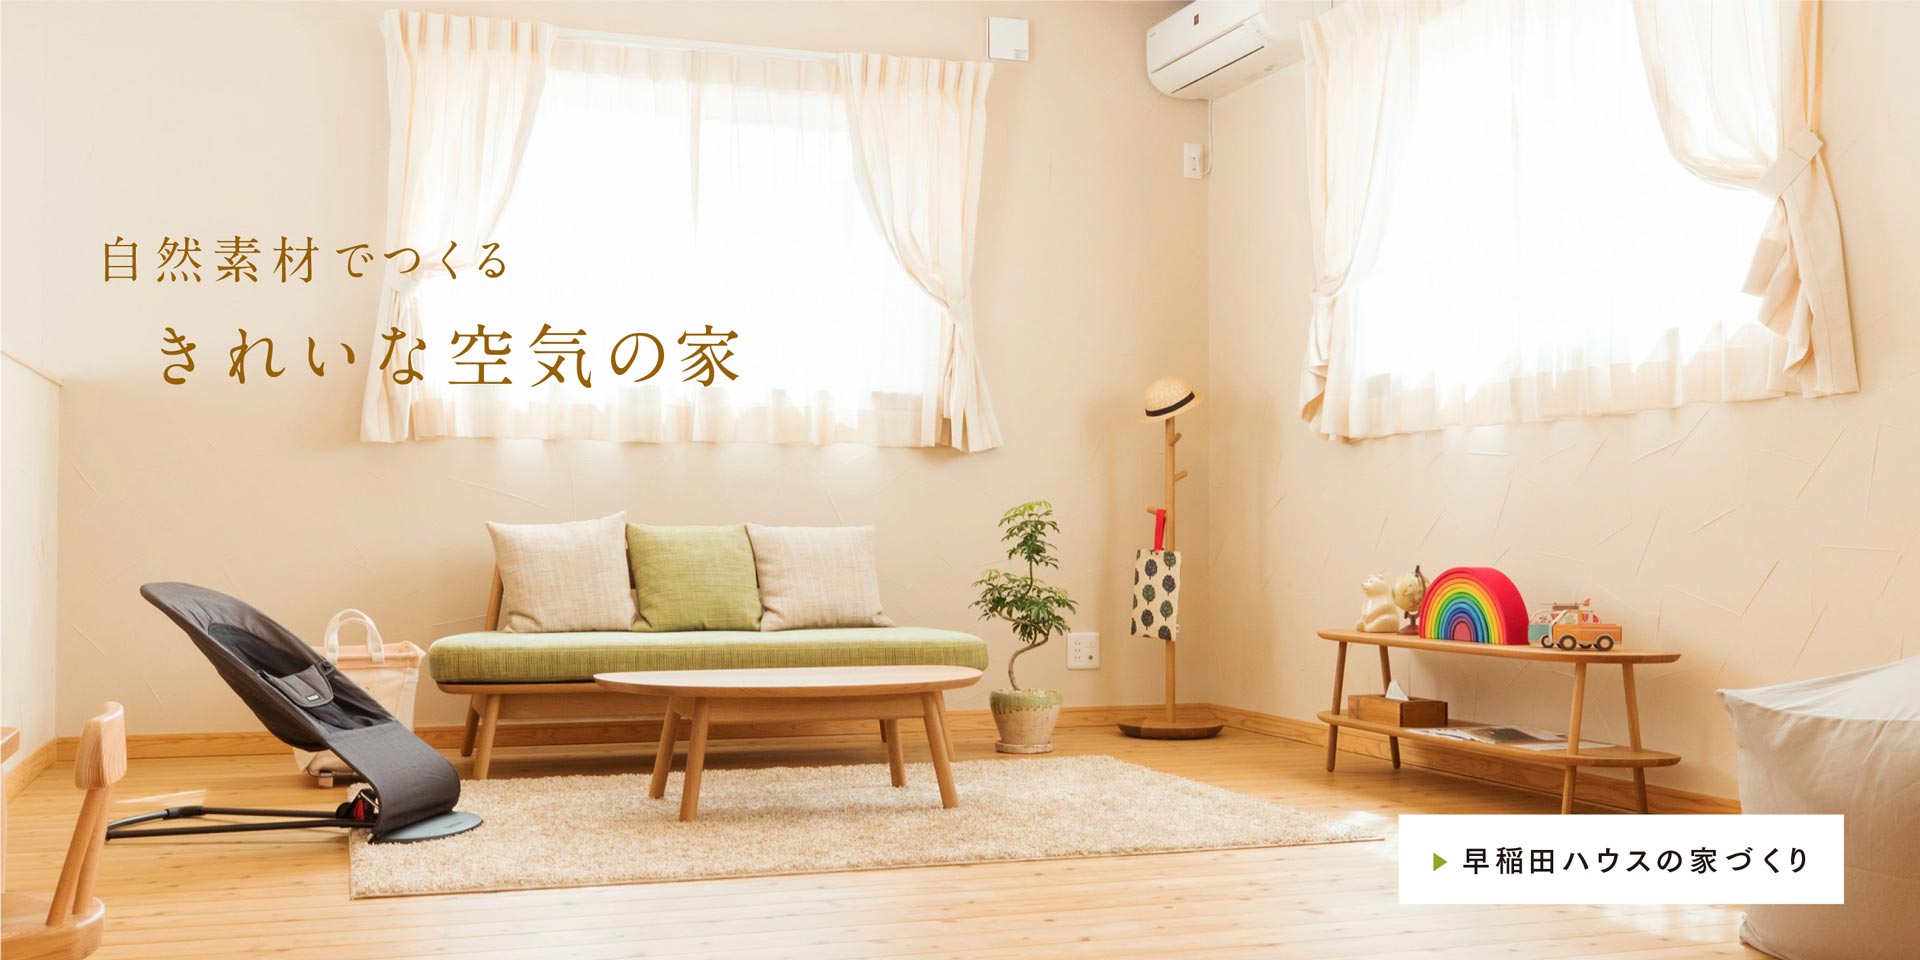 早稲田ハウス 自然素材でつくるきれいな空気の家